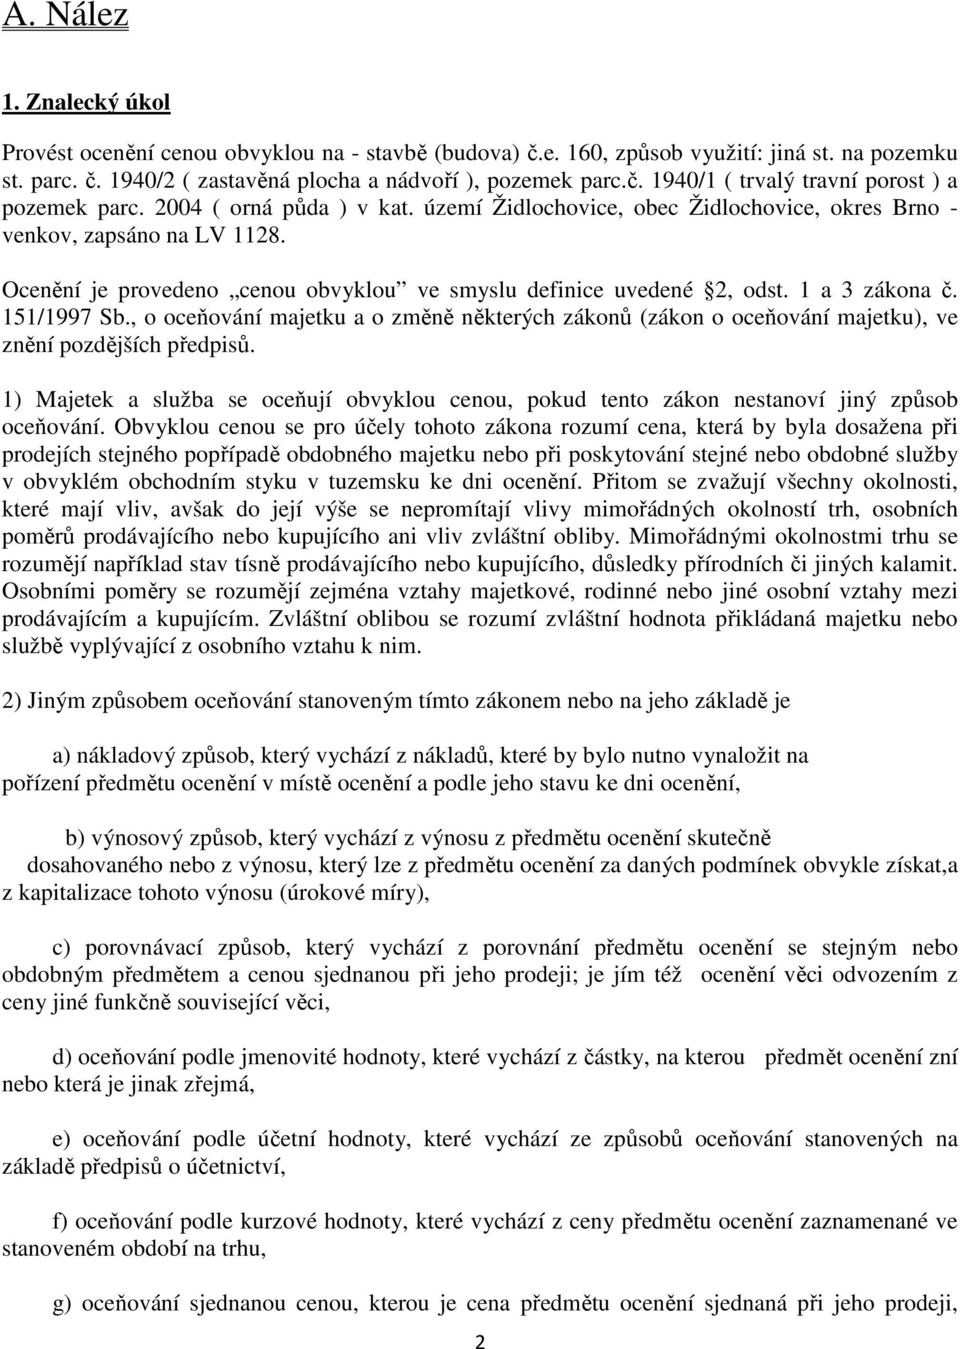 151/1997 Sb., o oceňování majetku a o změně některých zákonů (zákon o oceňování majetku), ve znění pozdějších předpisů.